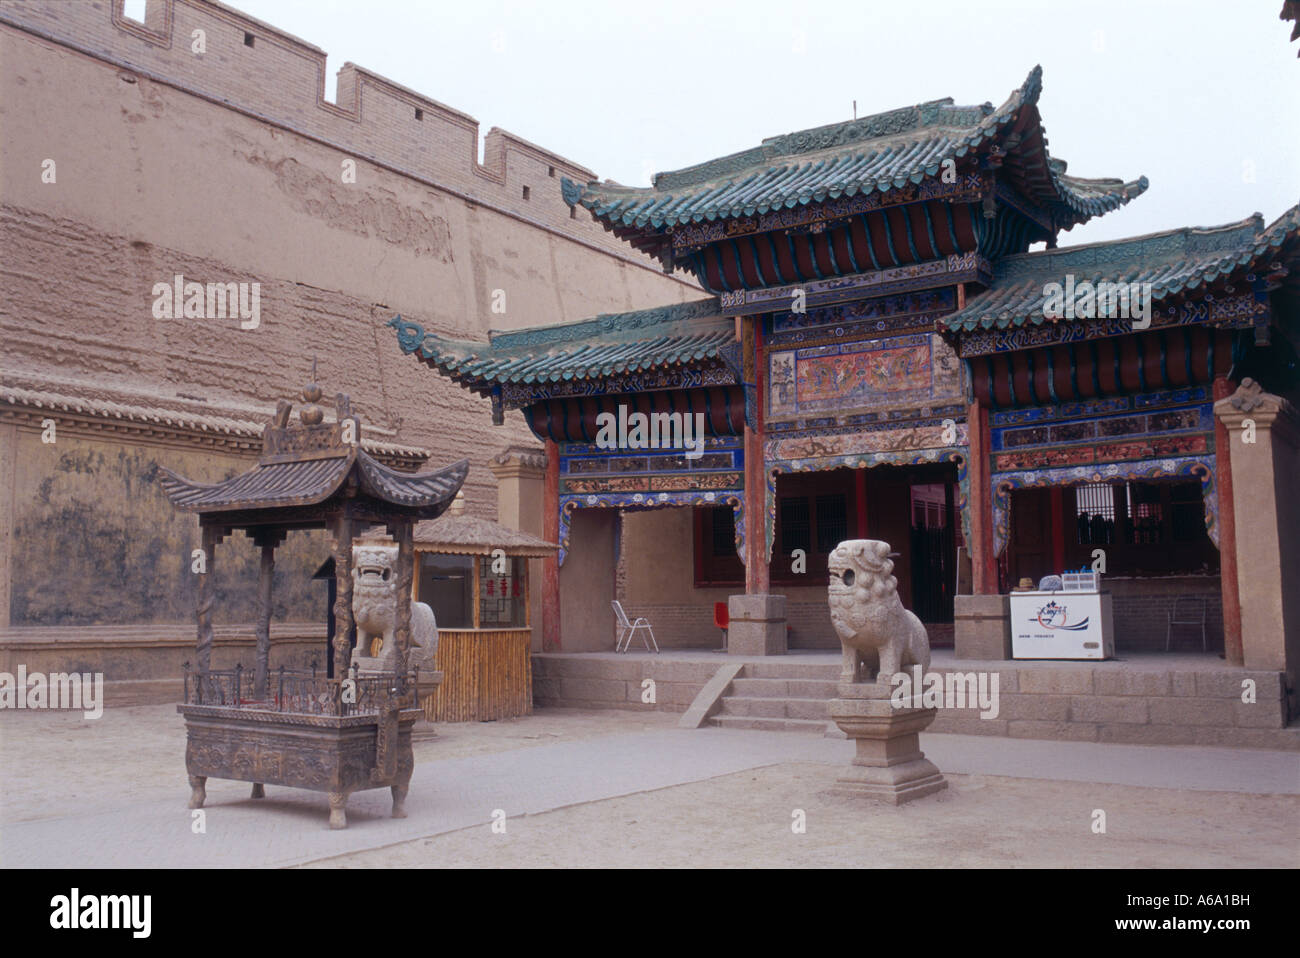 Cina, Jiayuguan Fort, Guandi Temple, incenso bruciatore e muratura in pietra scolpita lions nel cortile del tempio Foto Stock